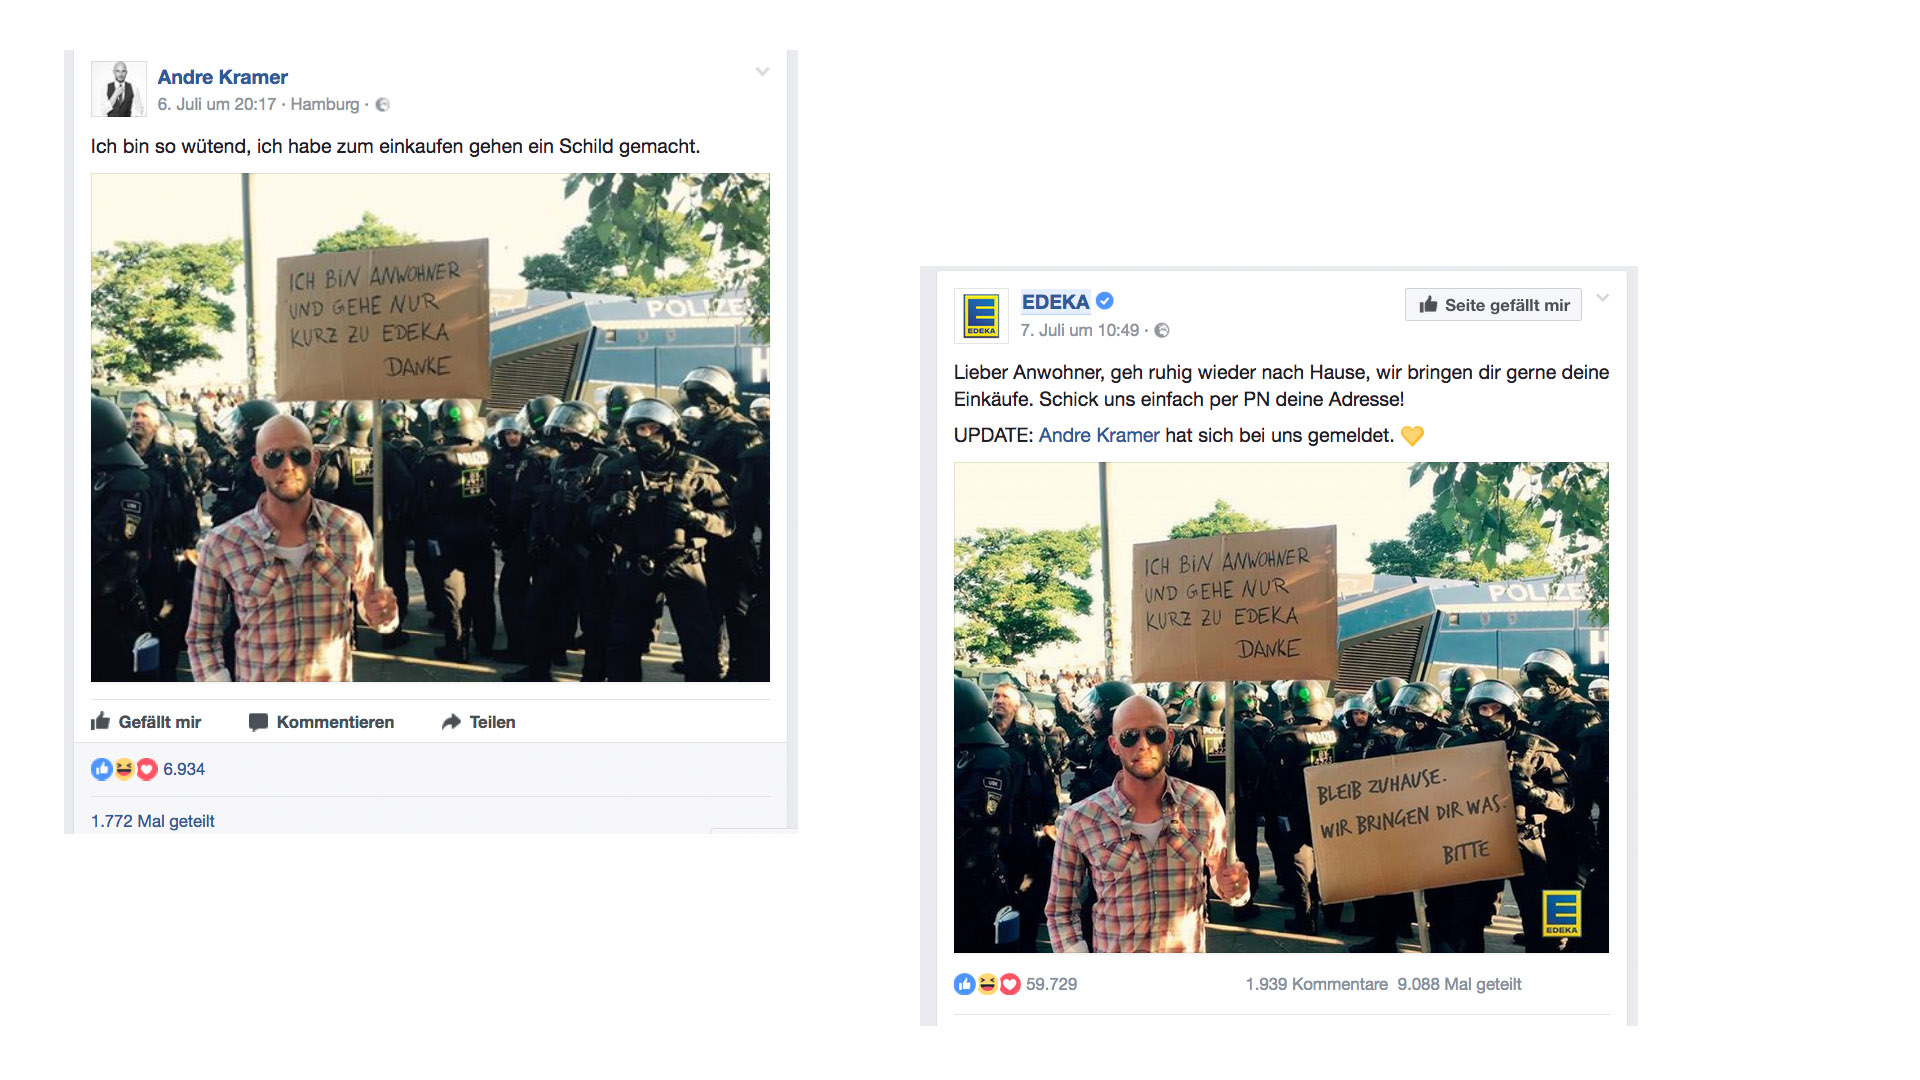 Das Foto von Andre Kramer während der G20-Proteste und die Reaktion von Edeka darauf wurden auf Facebook tausendfach geteilt